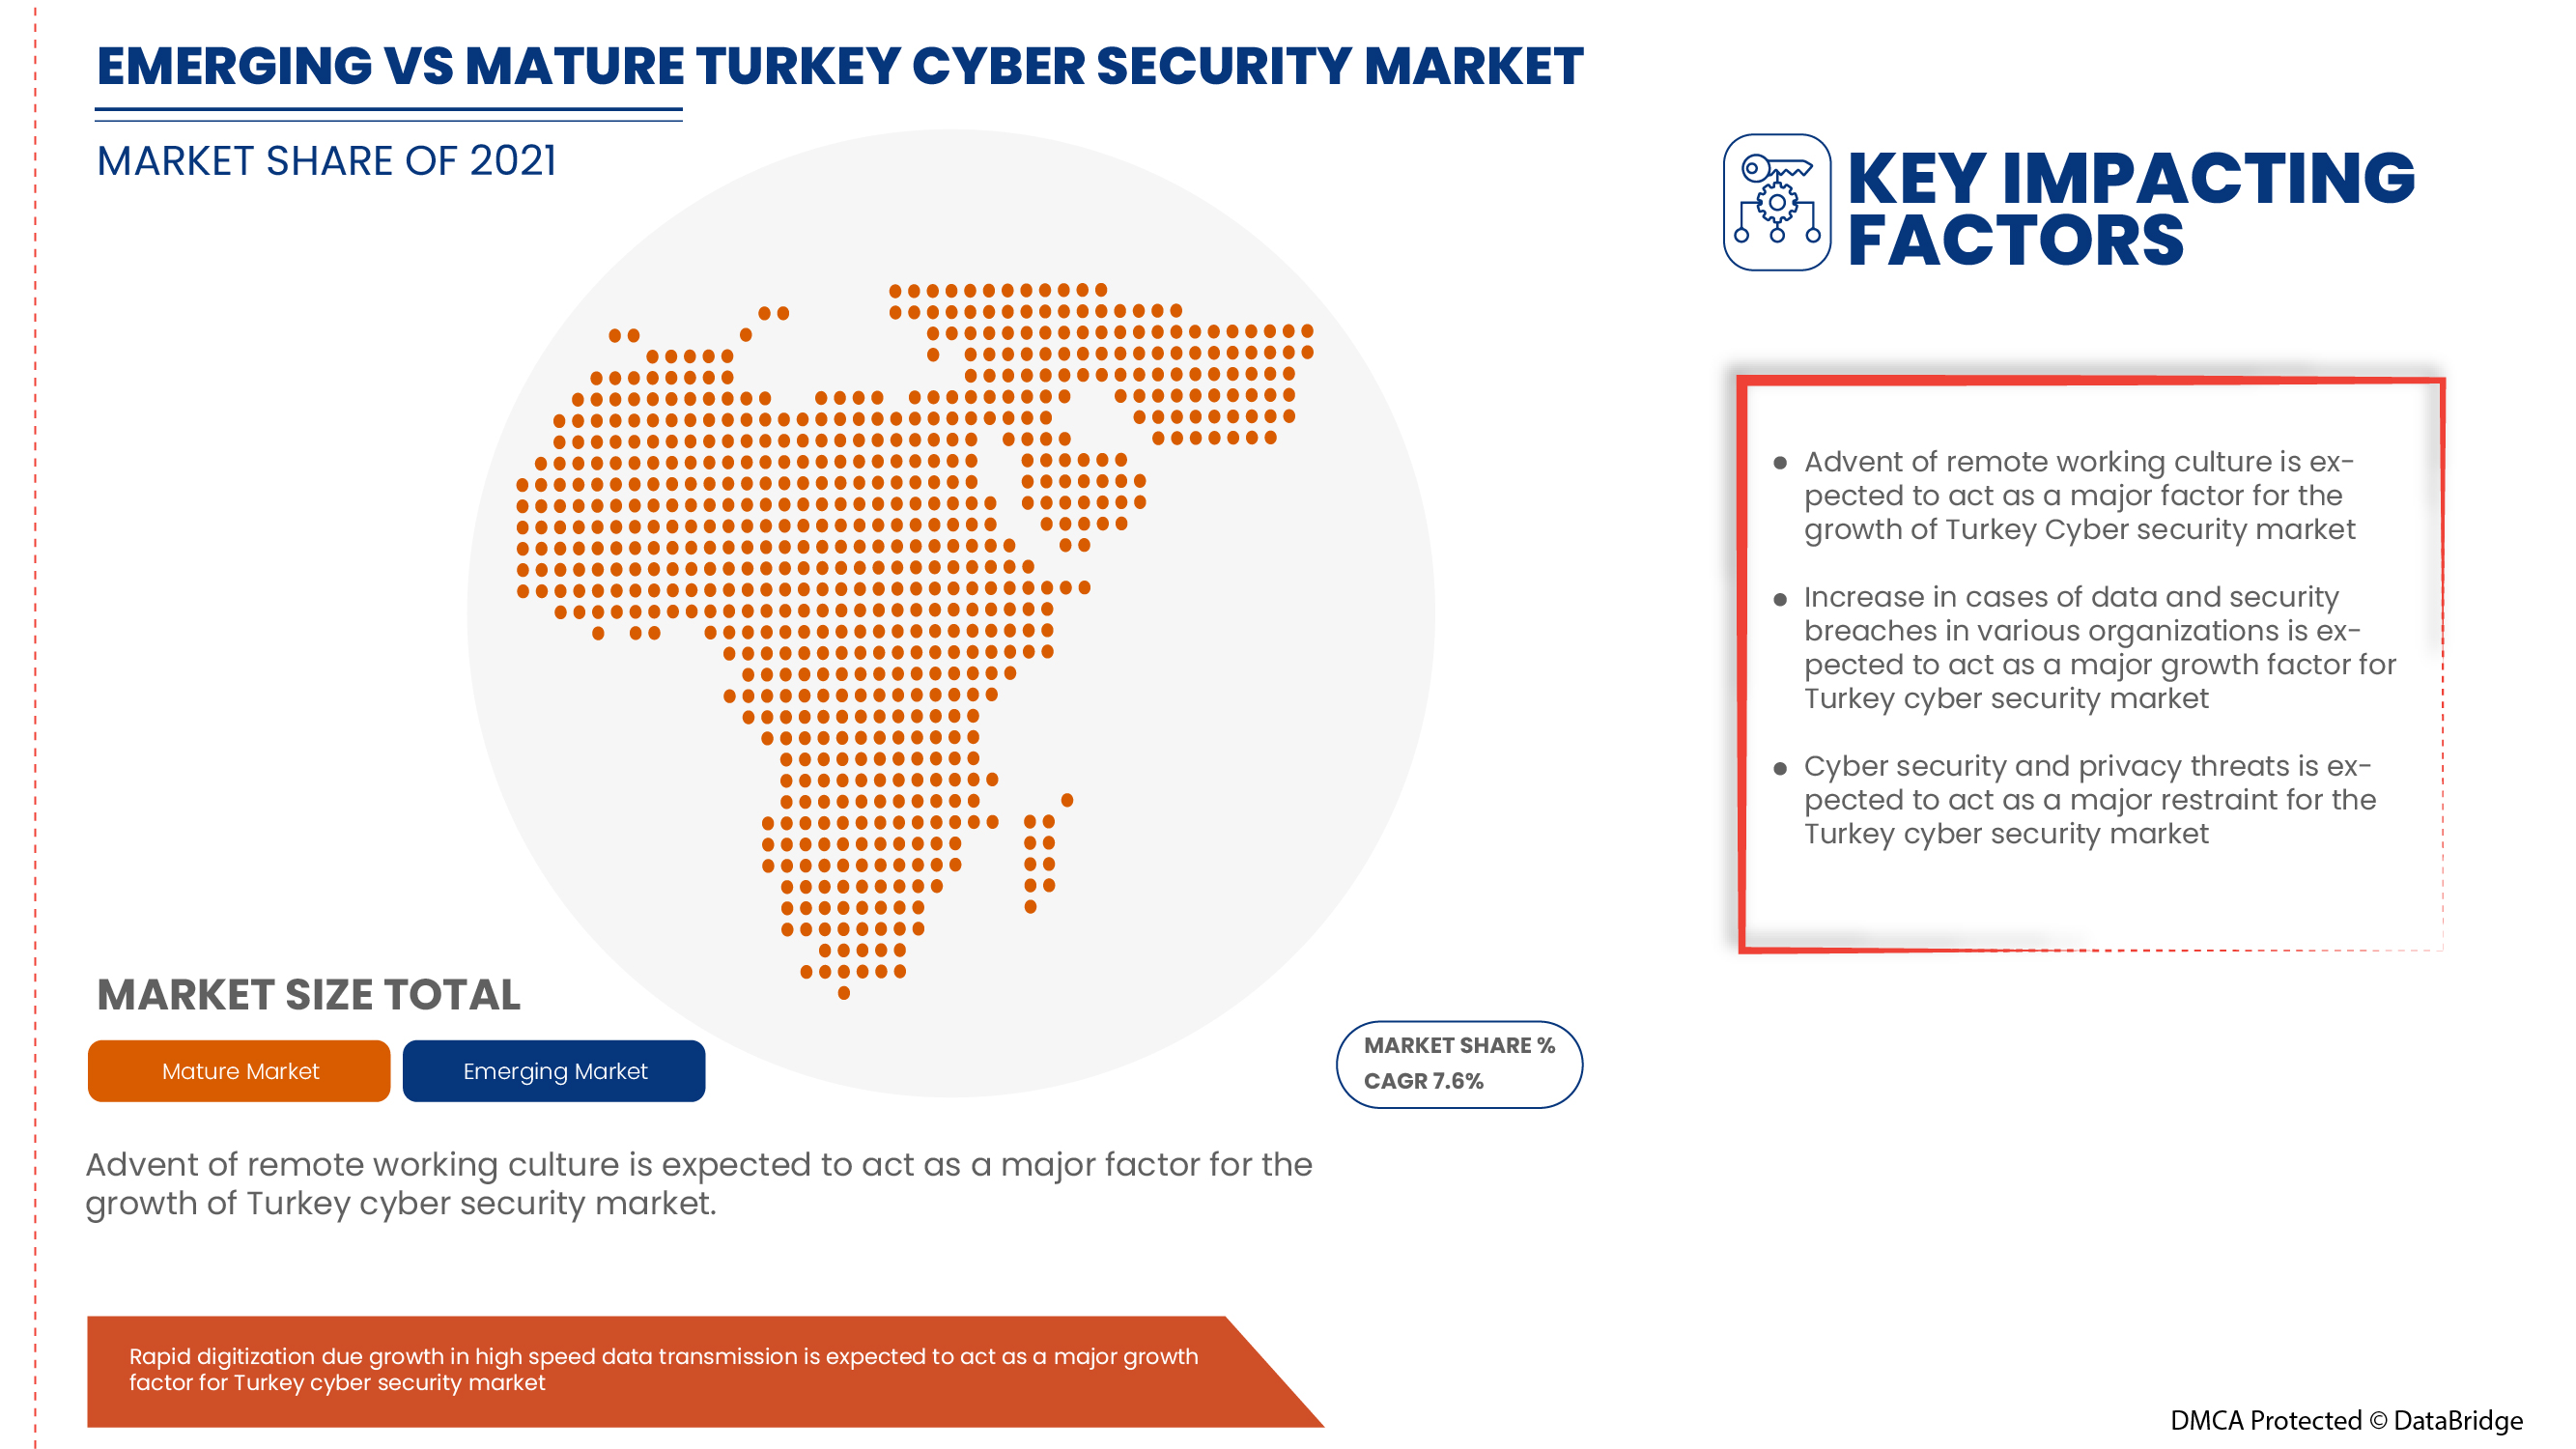 Turkey Cyber Security Market